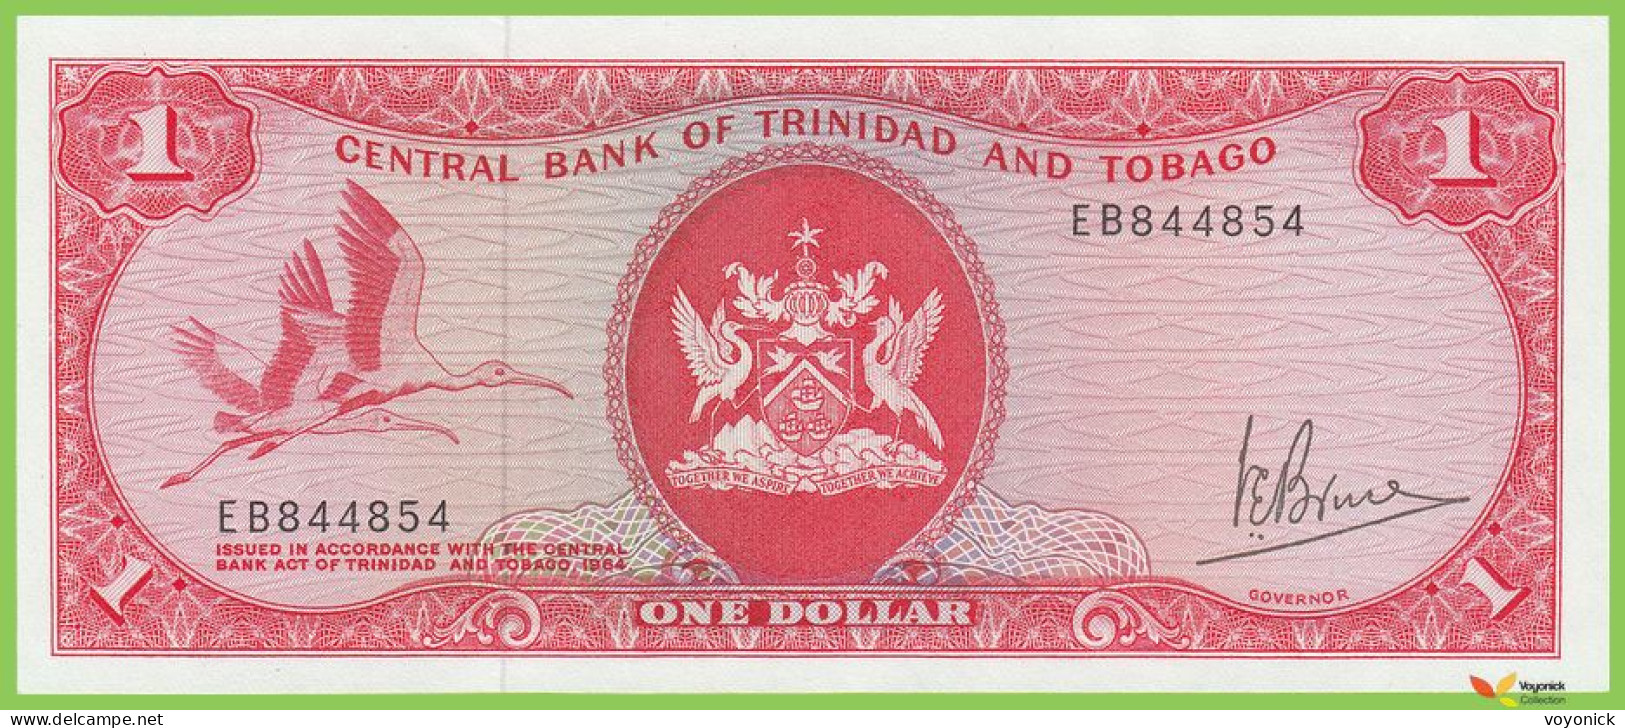 Voyo TRINIDAD & TOBAGO 1 Dollar L1964(1977) P30a B205a EB 844854  UNC - Trinidad & Tobago